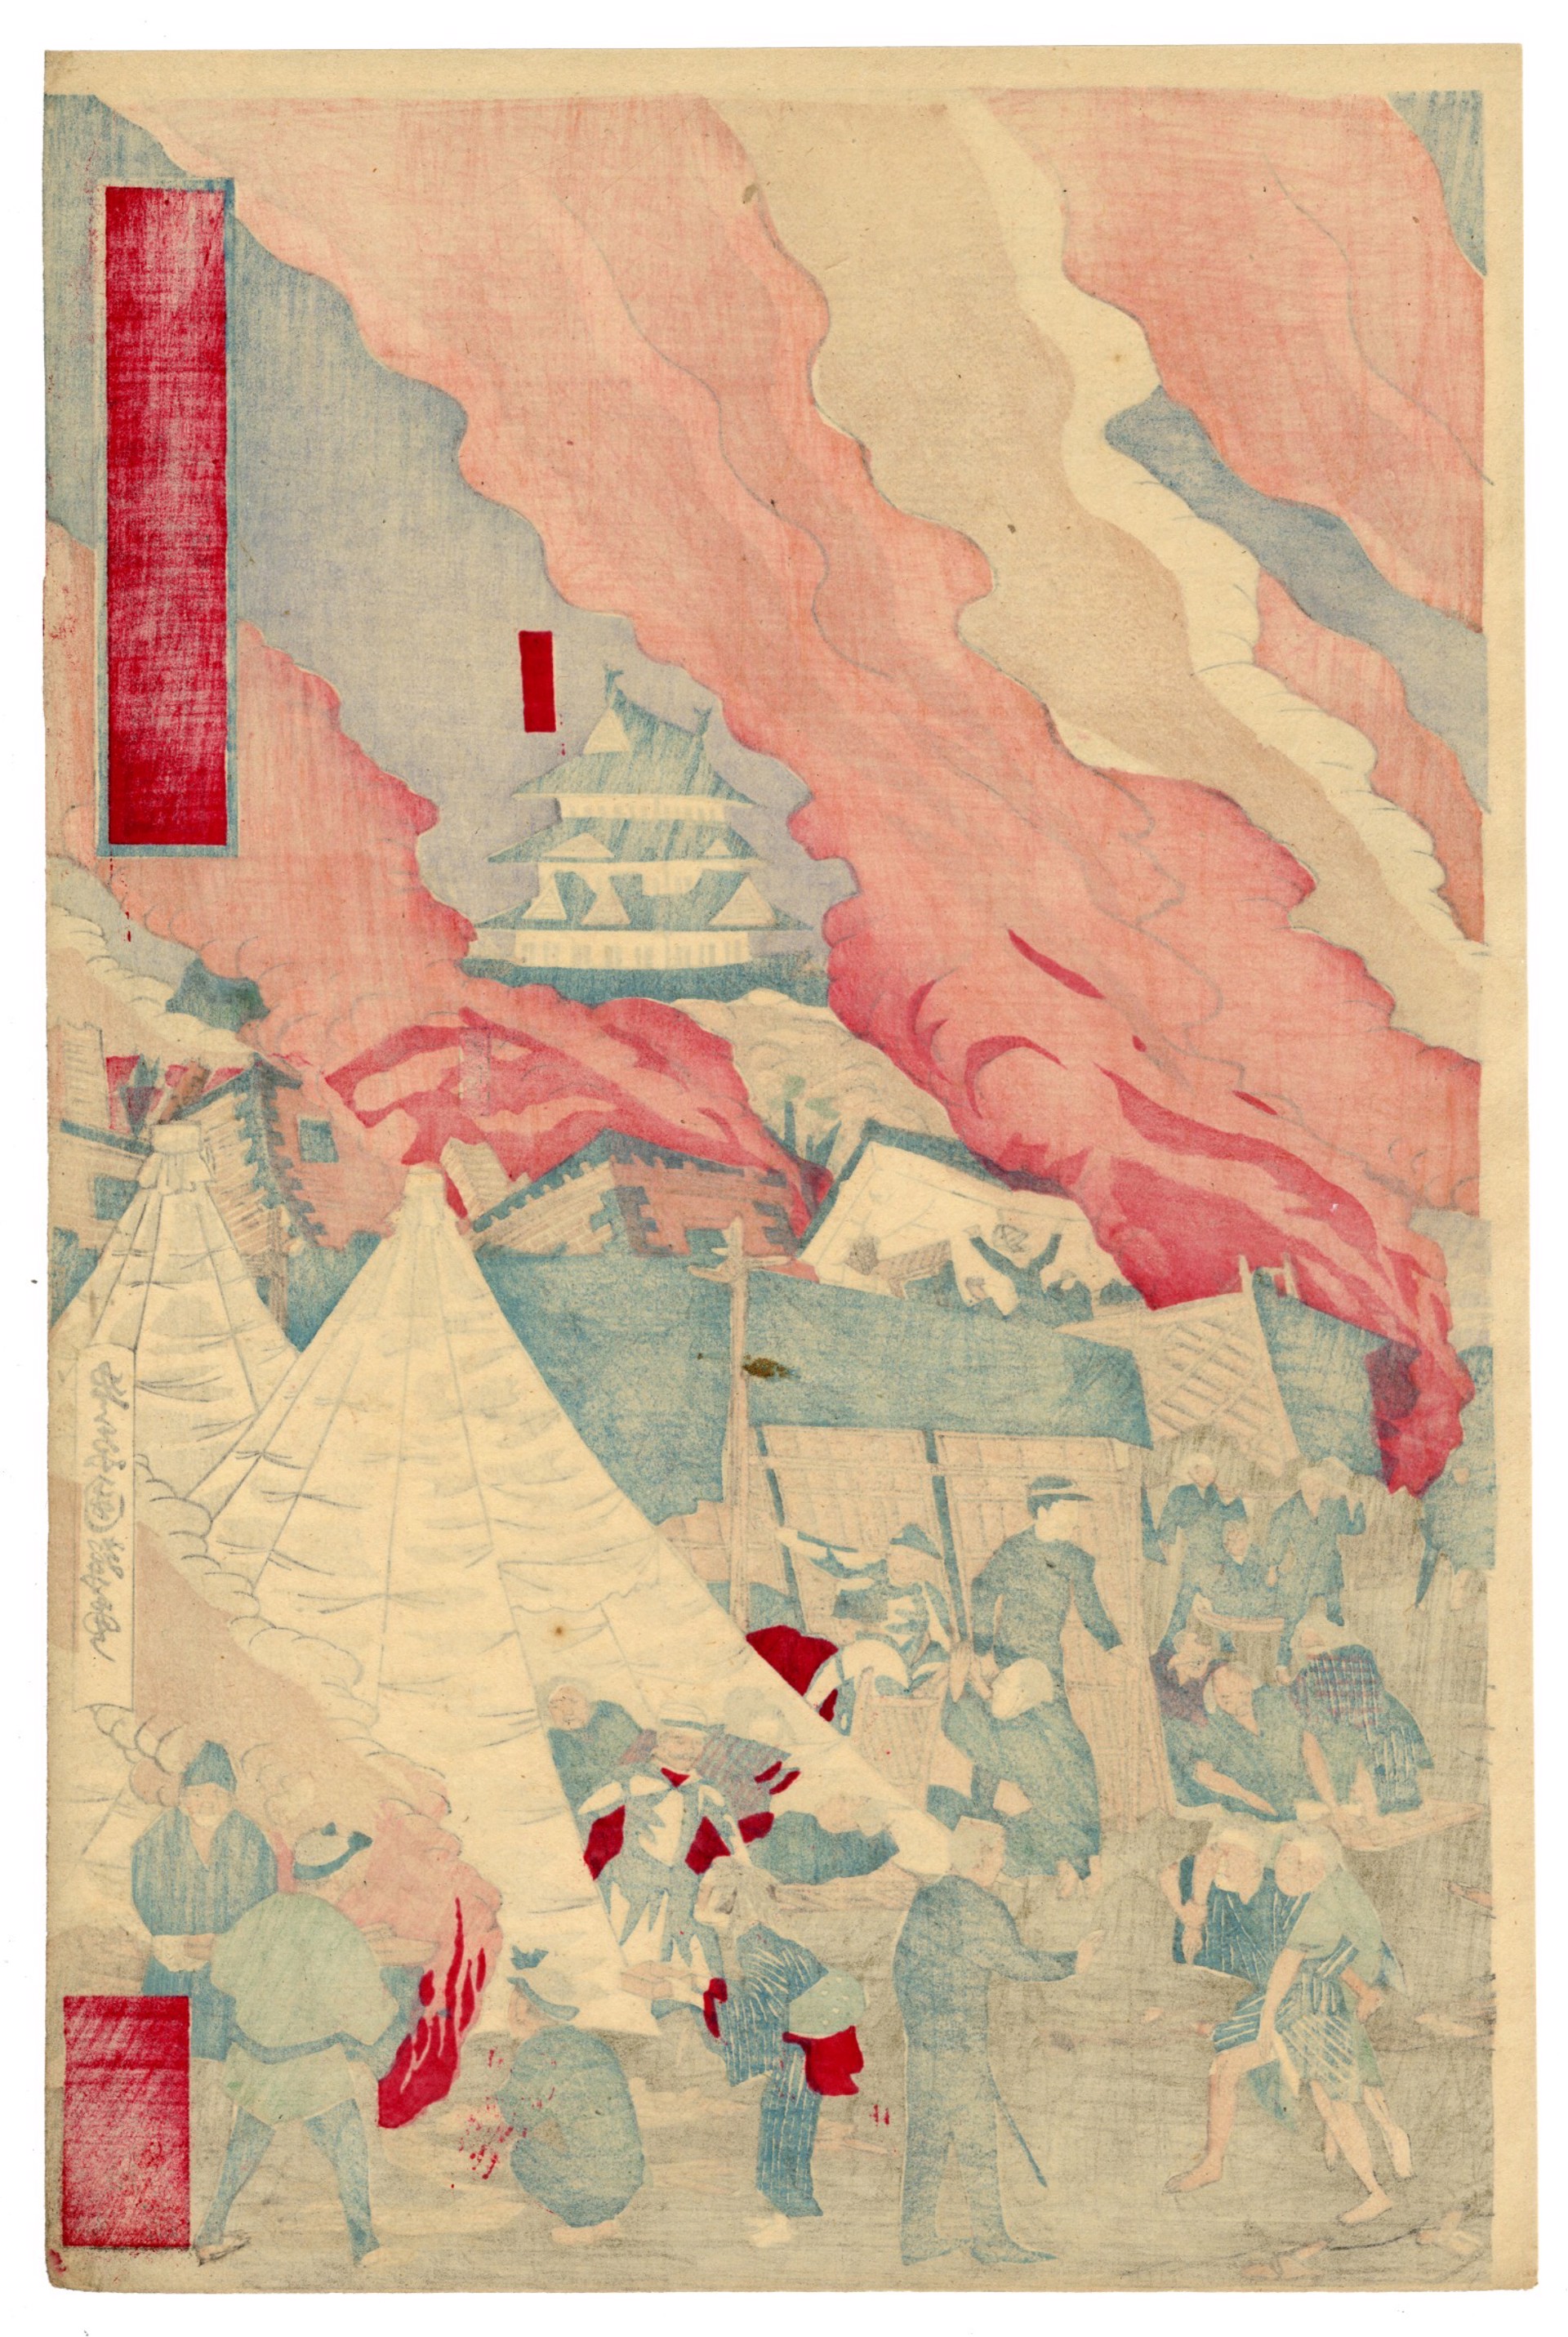 The Great Mino-Owari Earthquake, 10/28/1891 by Kuniteru III